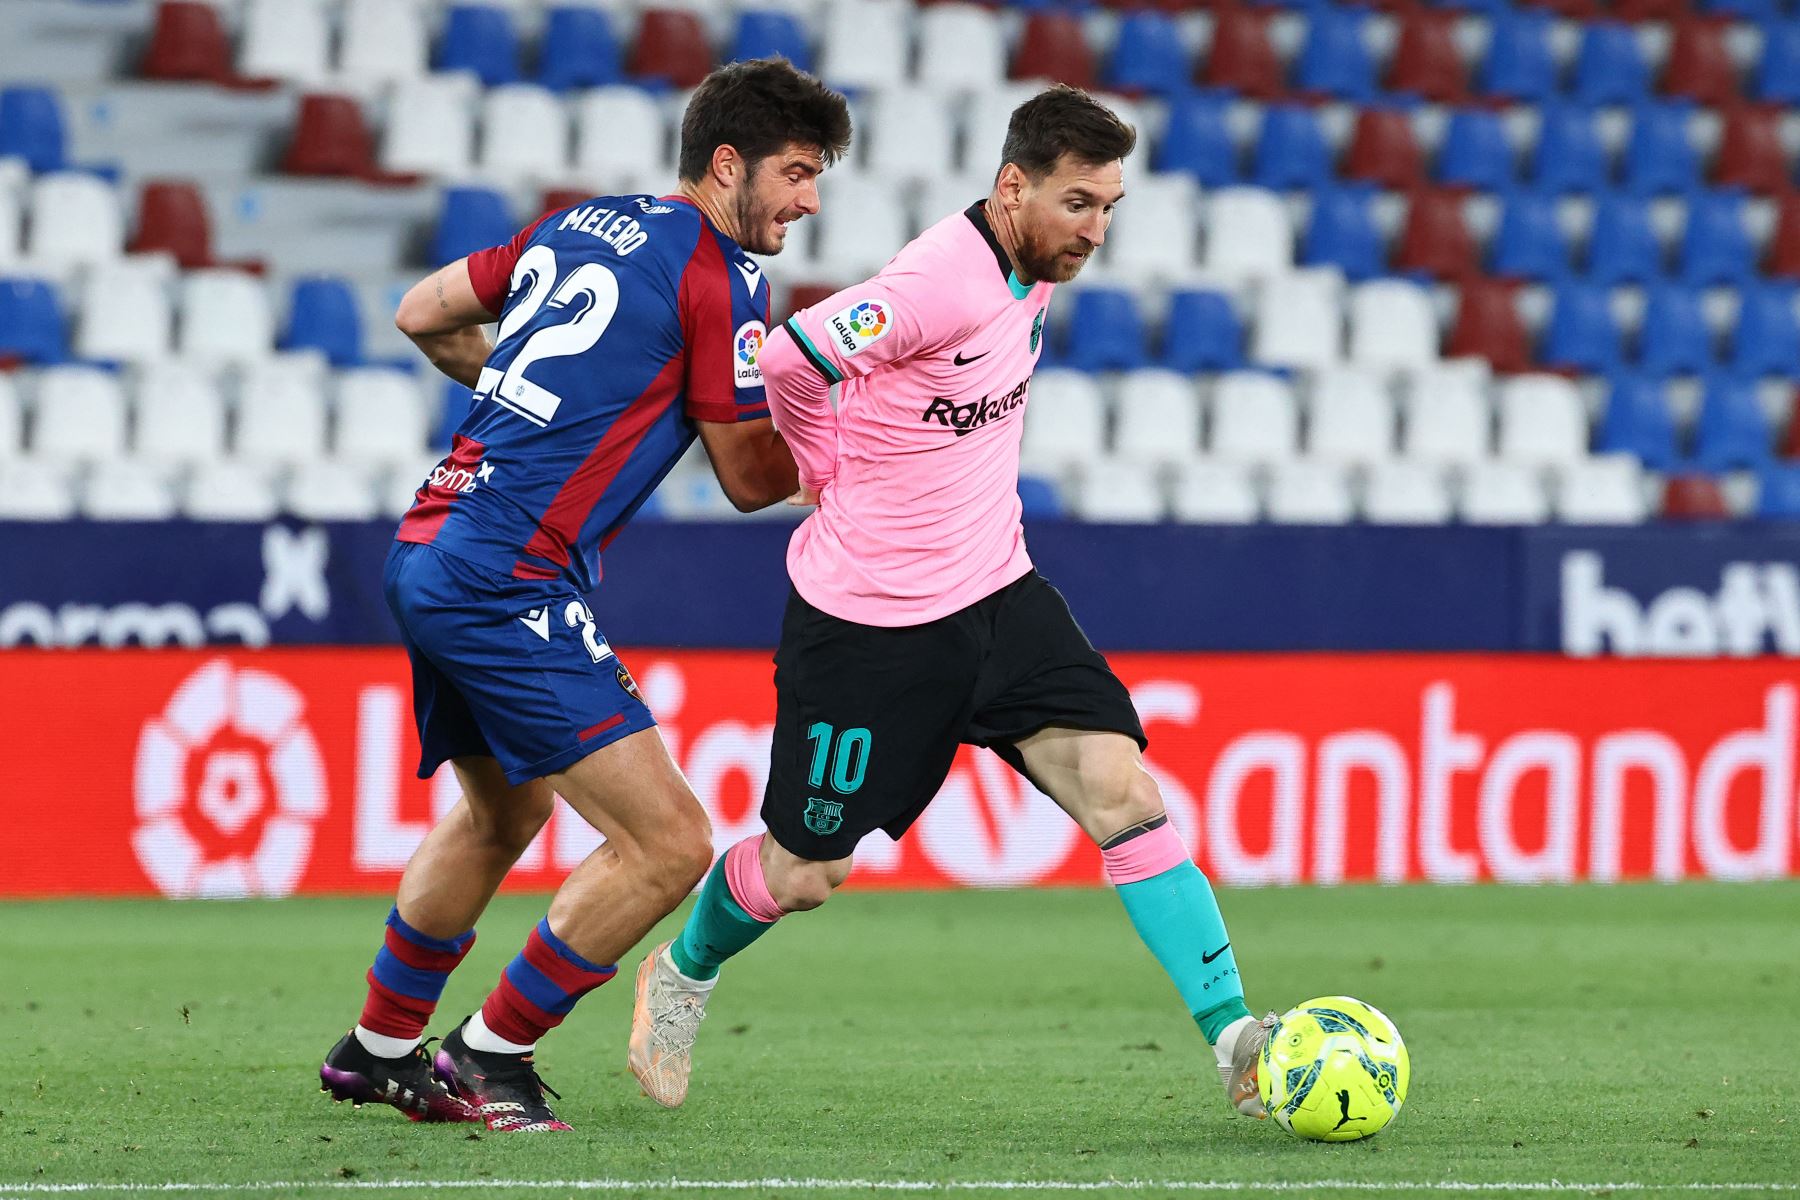 El delantero argentino del Barcelona Lionel Messi compite con el centrocampista español del Levante Gonzalo Melero durante el partido de fútbol de la liga española Levante UD contra el FC Barcelona.
Foto: AFP